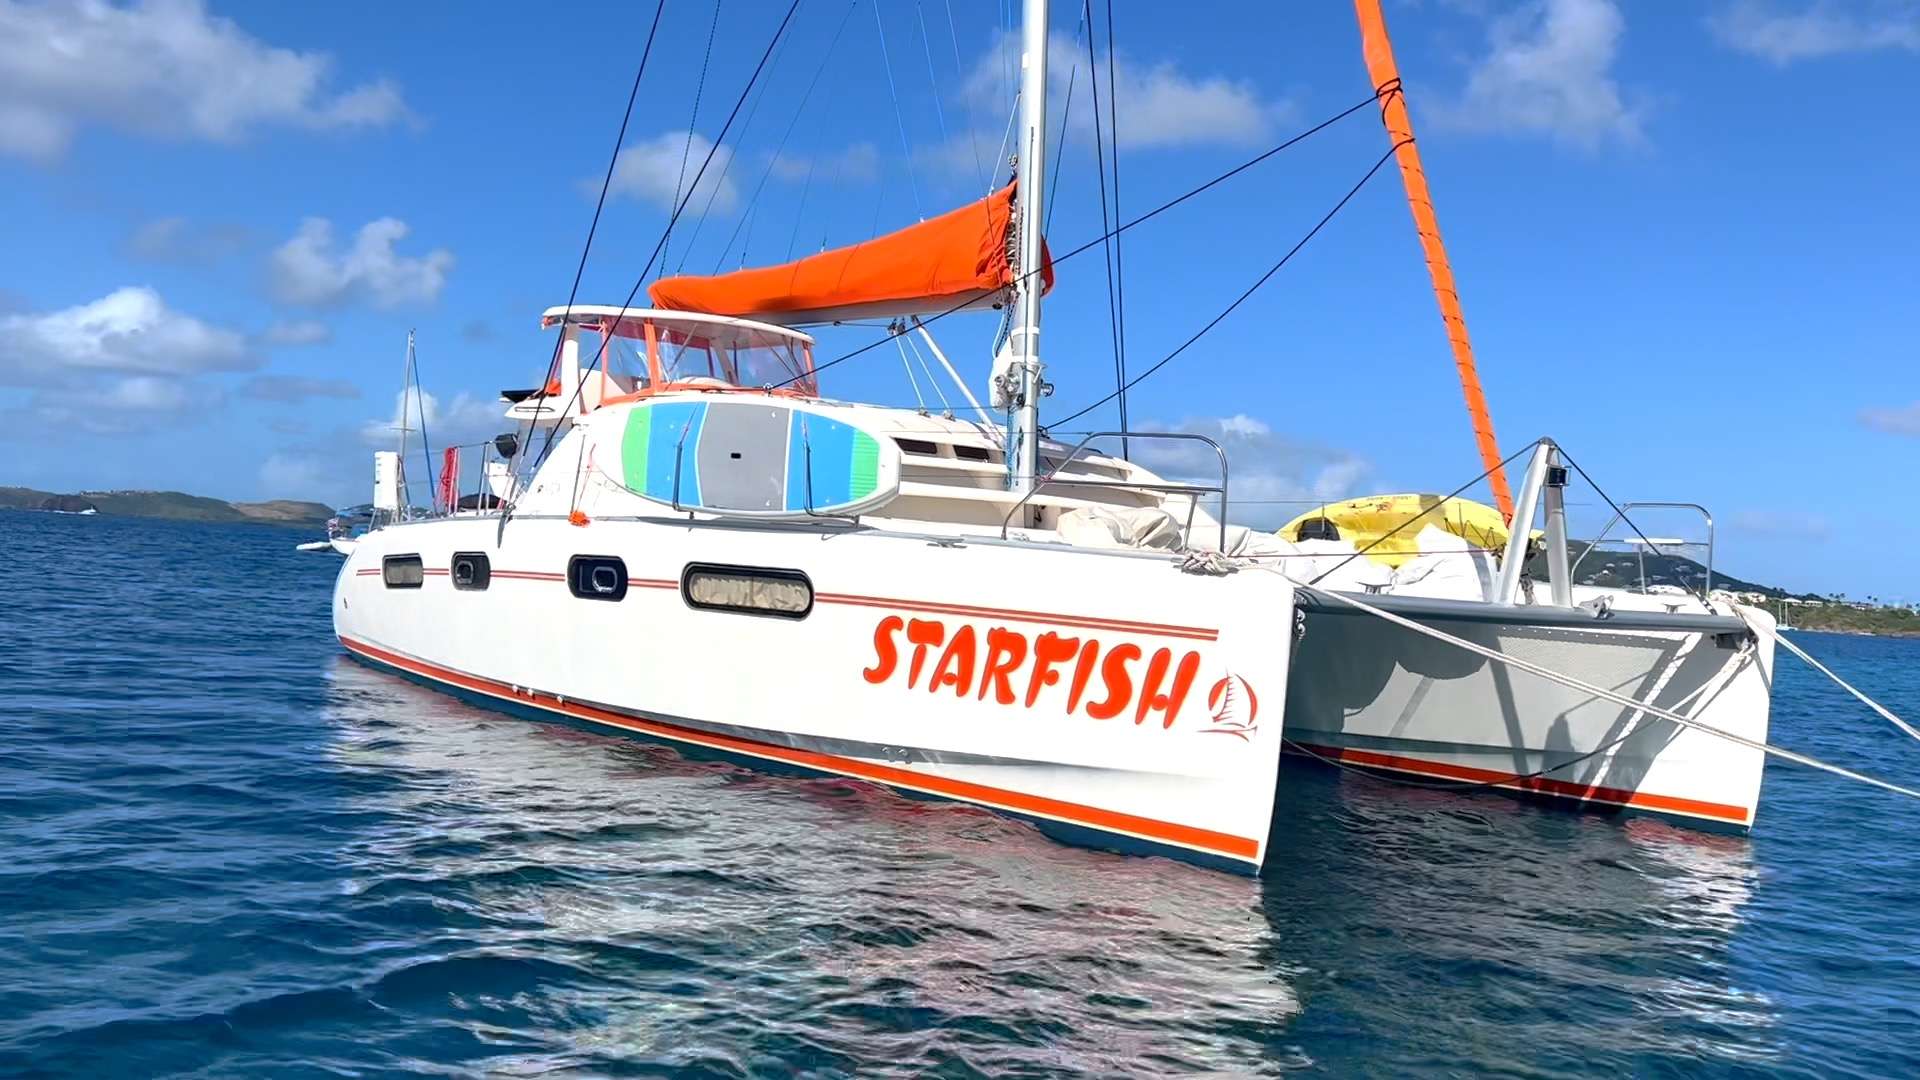 STARFISH Yacht Charter - STARFISH